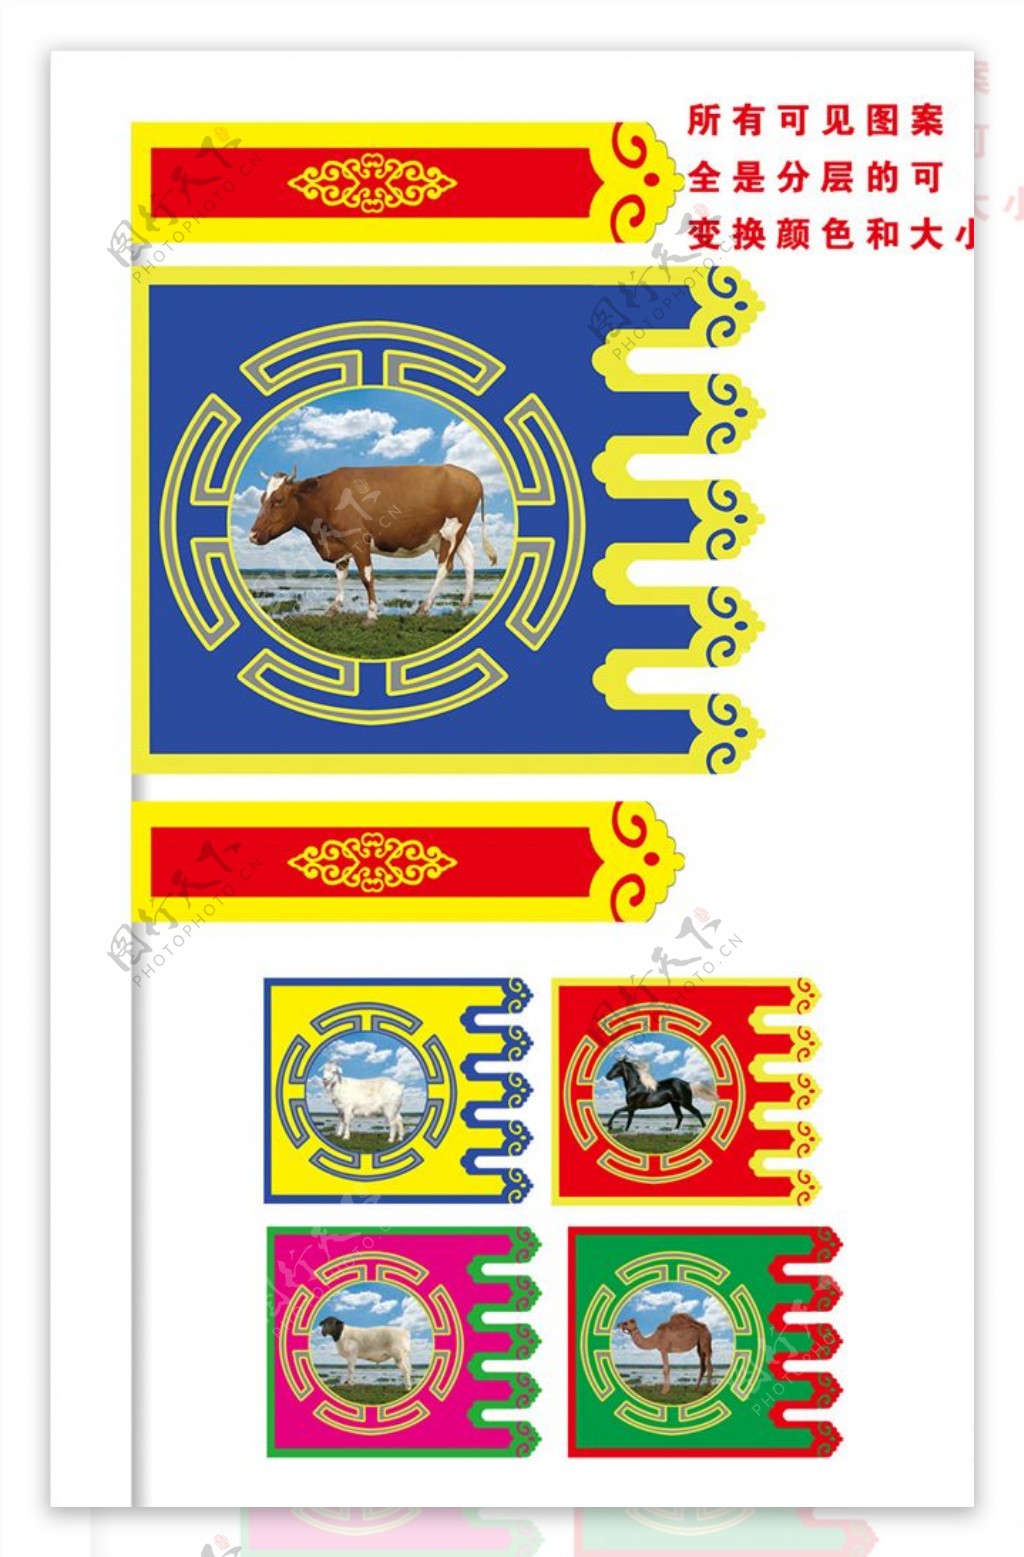 蒙族特色牛羊马动物旗帜